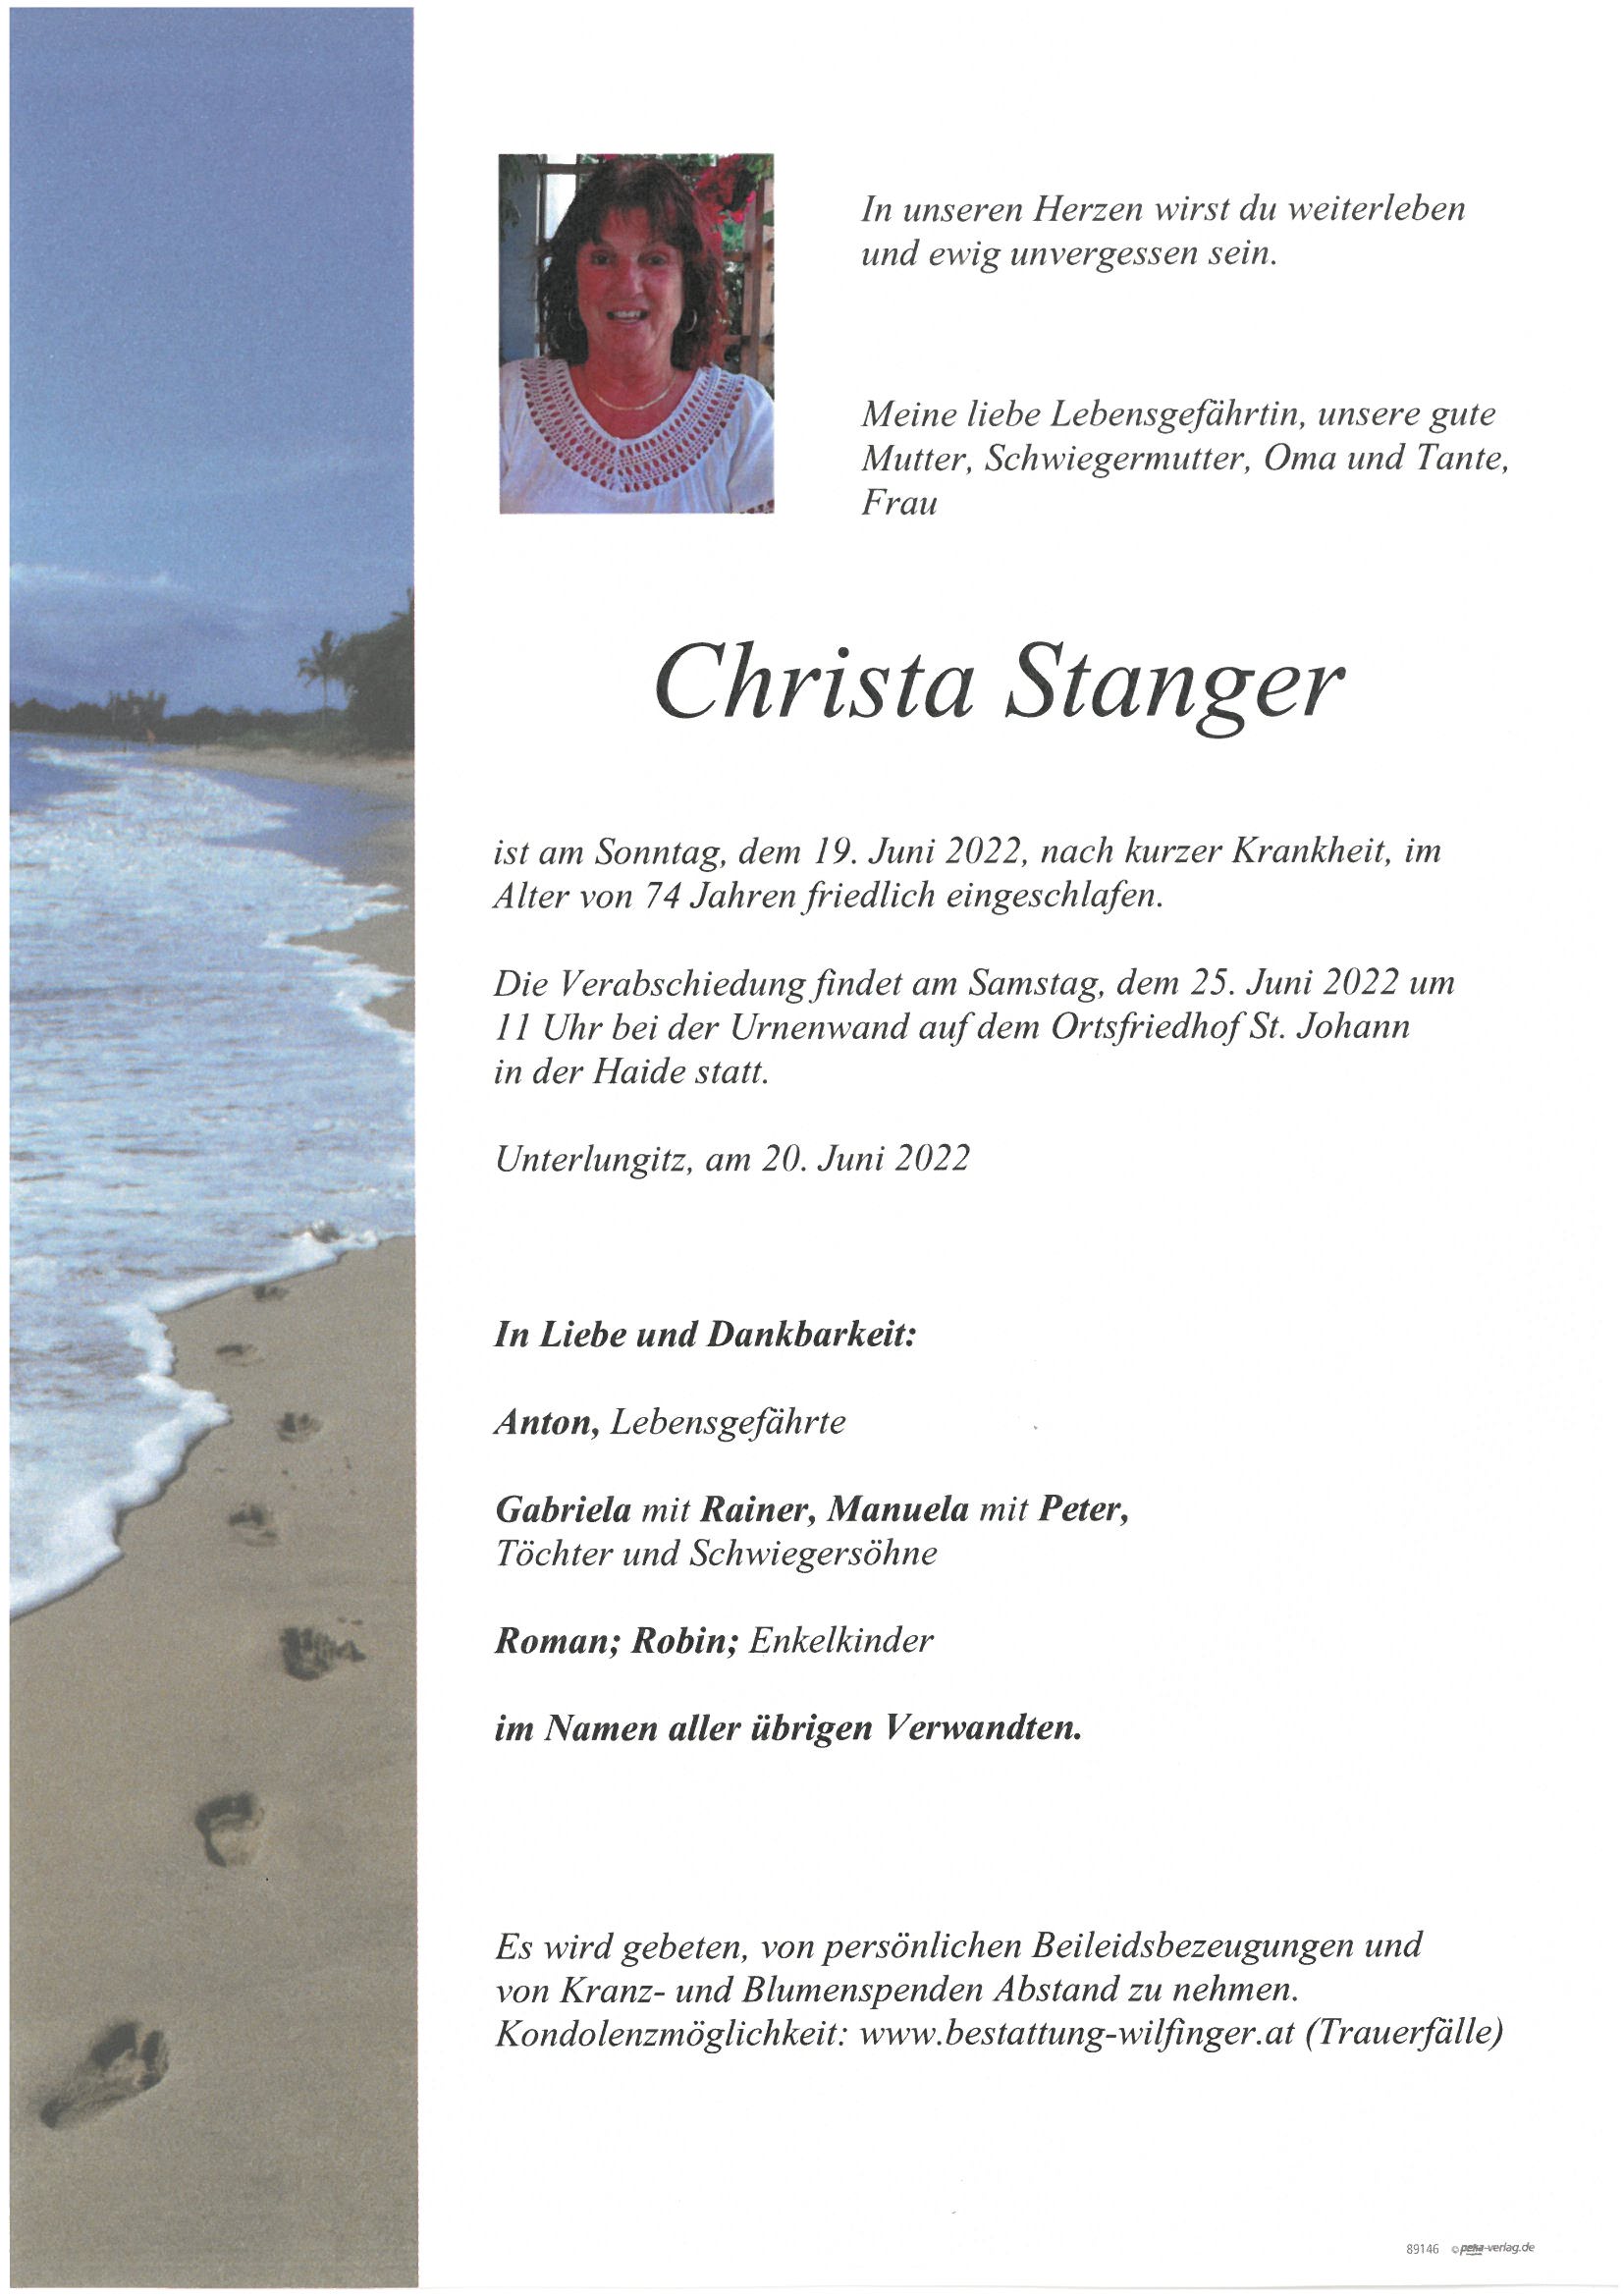 Christine Stanger, Unterlungitz